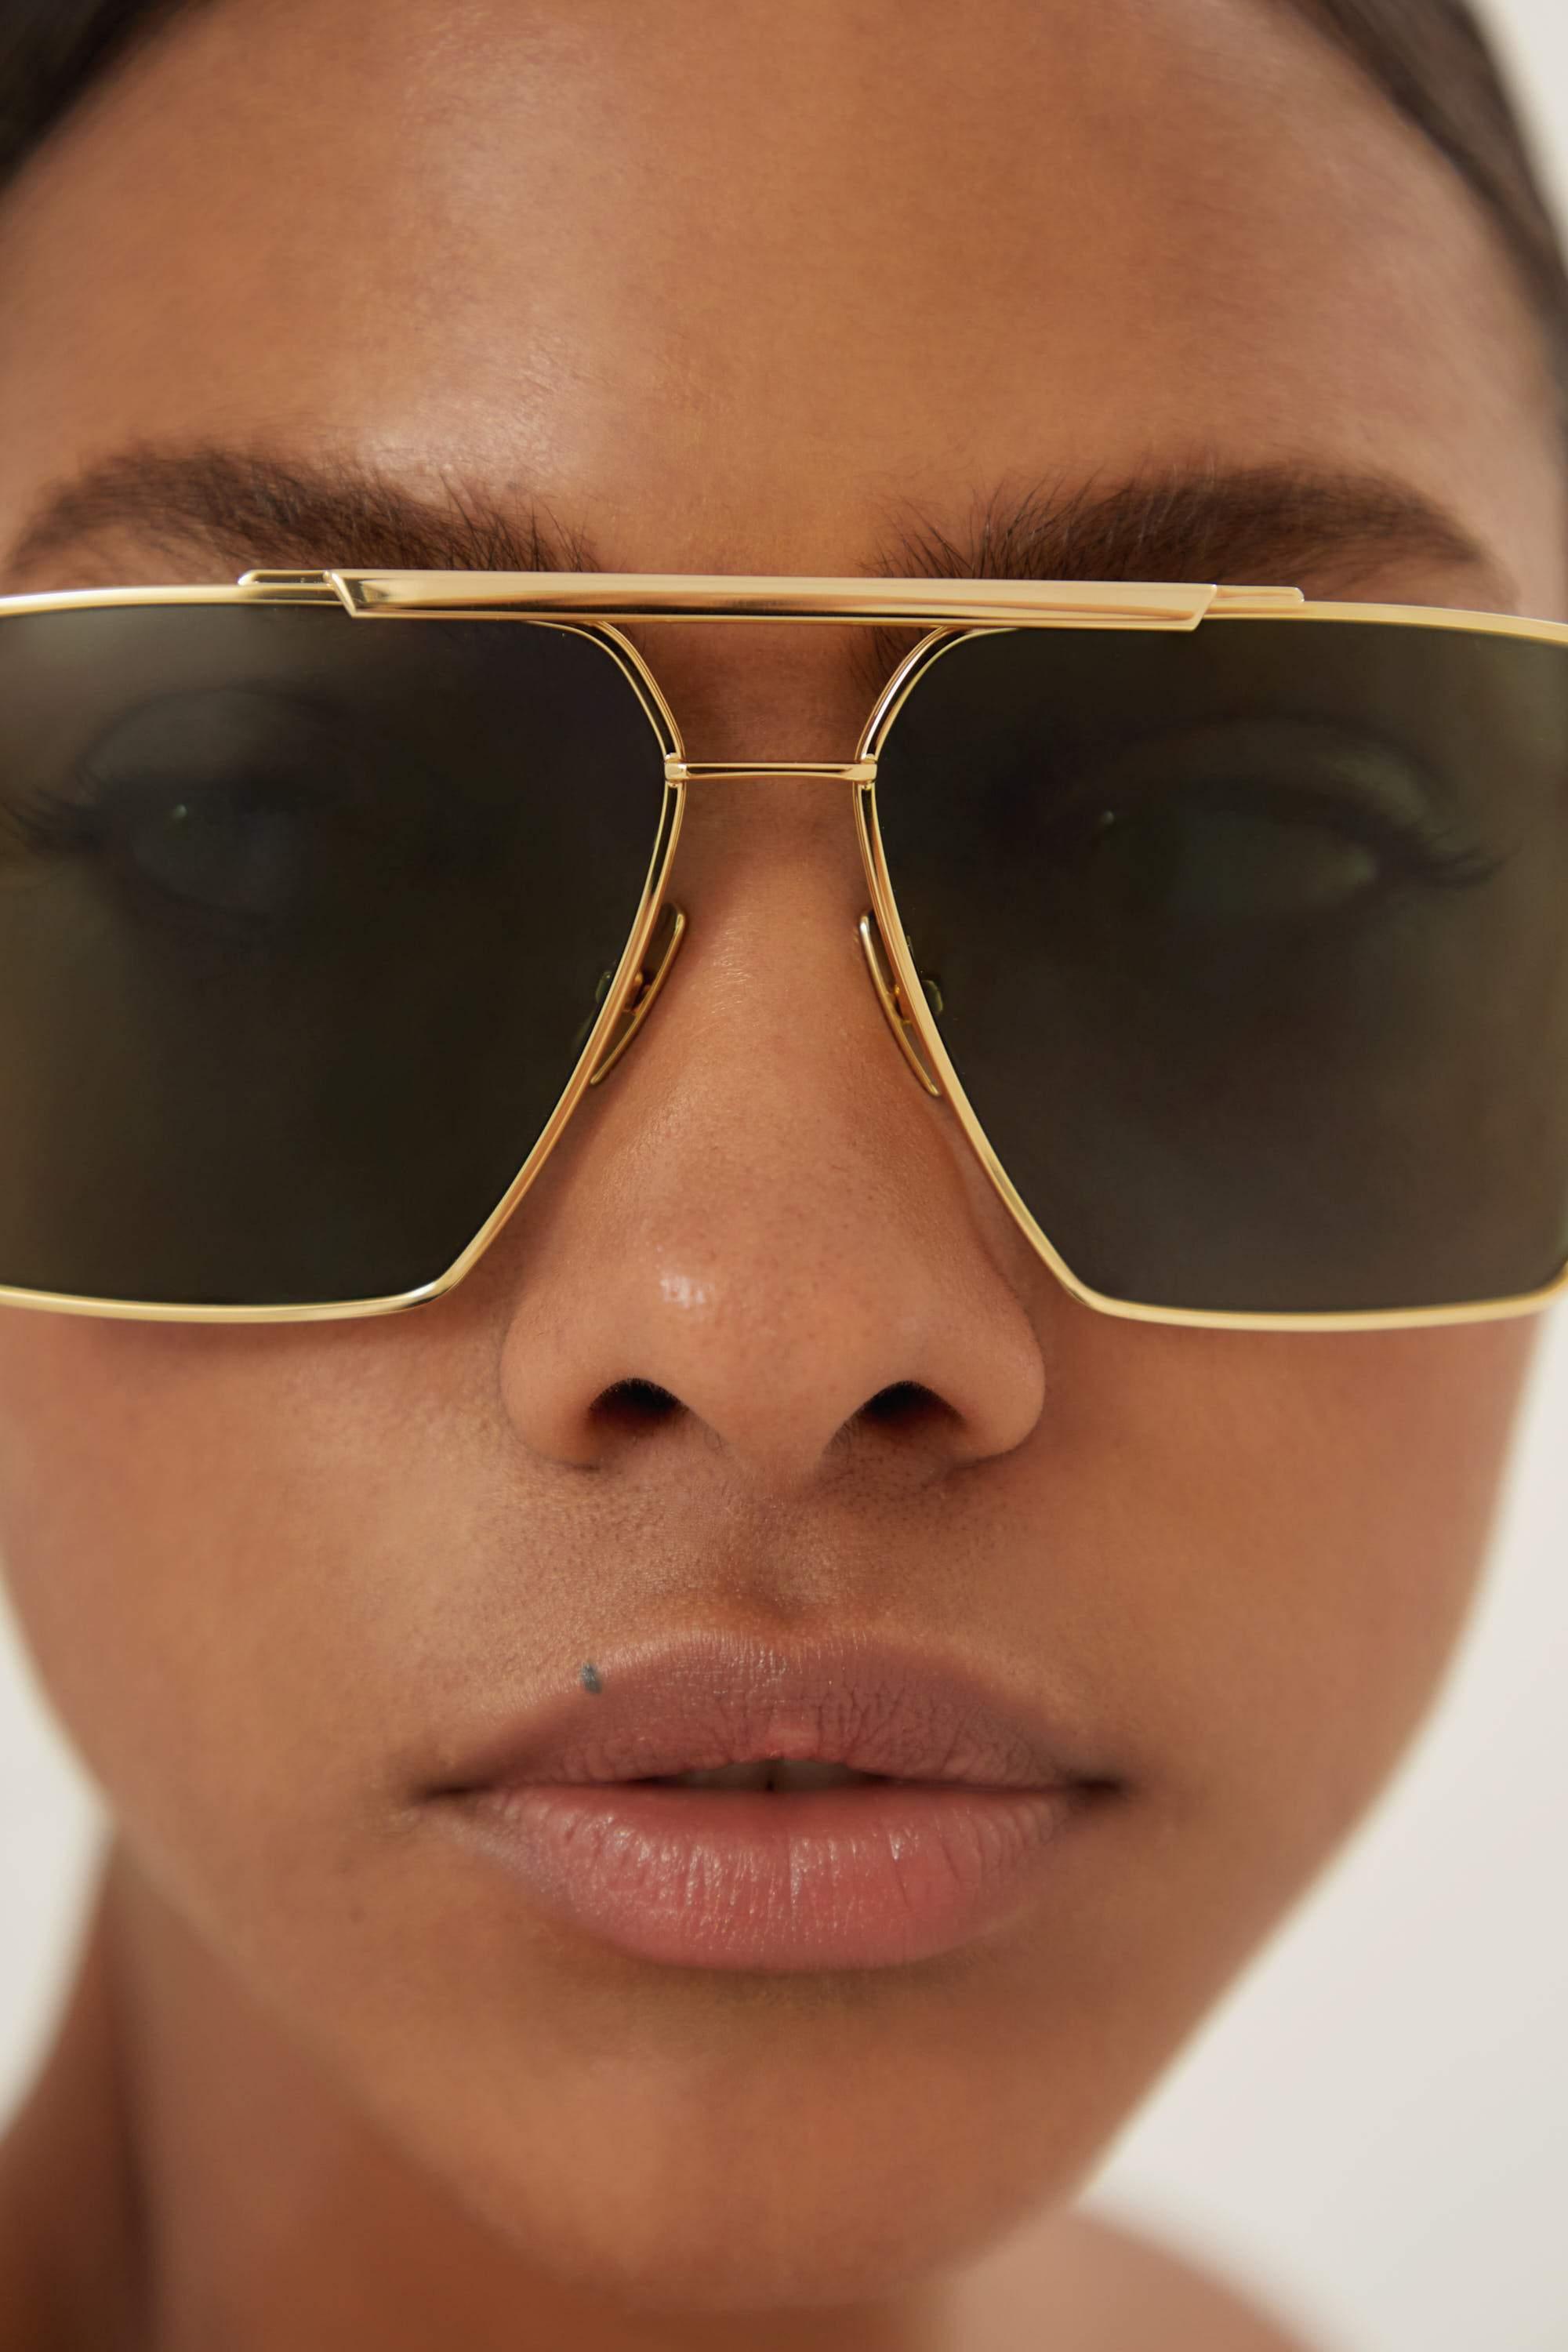 Bottega Veneta caravan gold and brown sunglasses